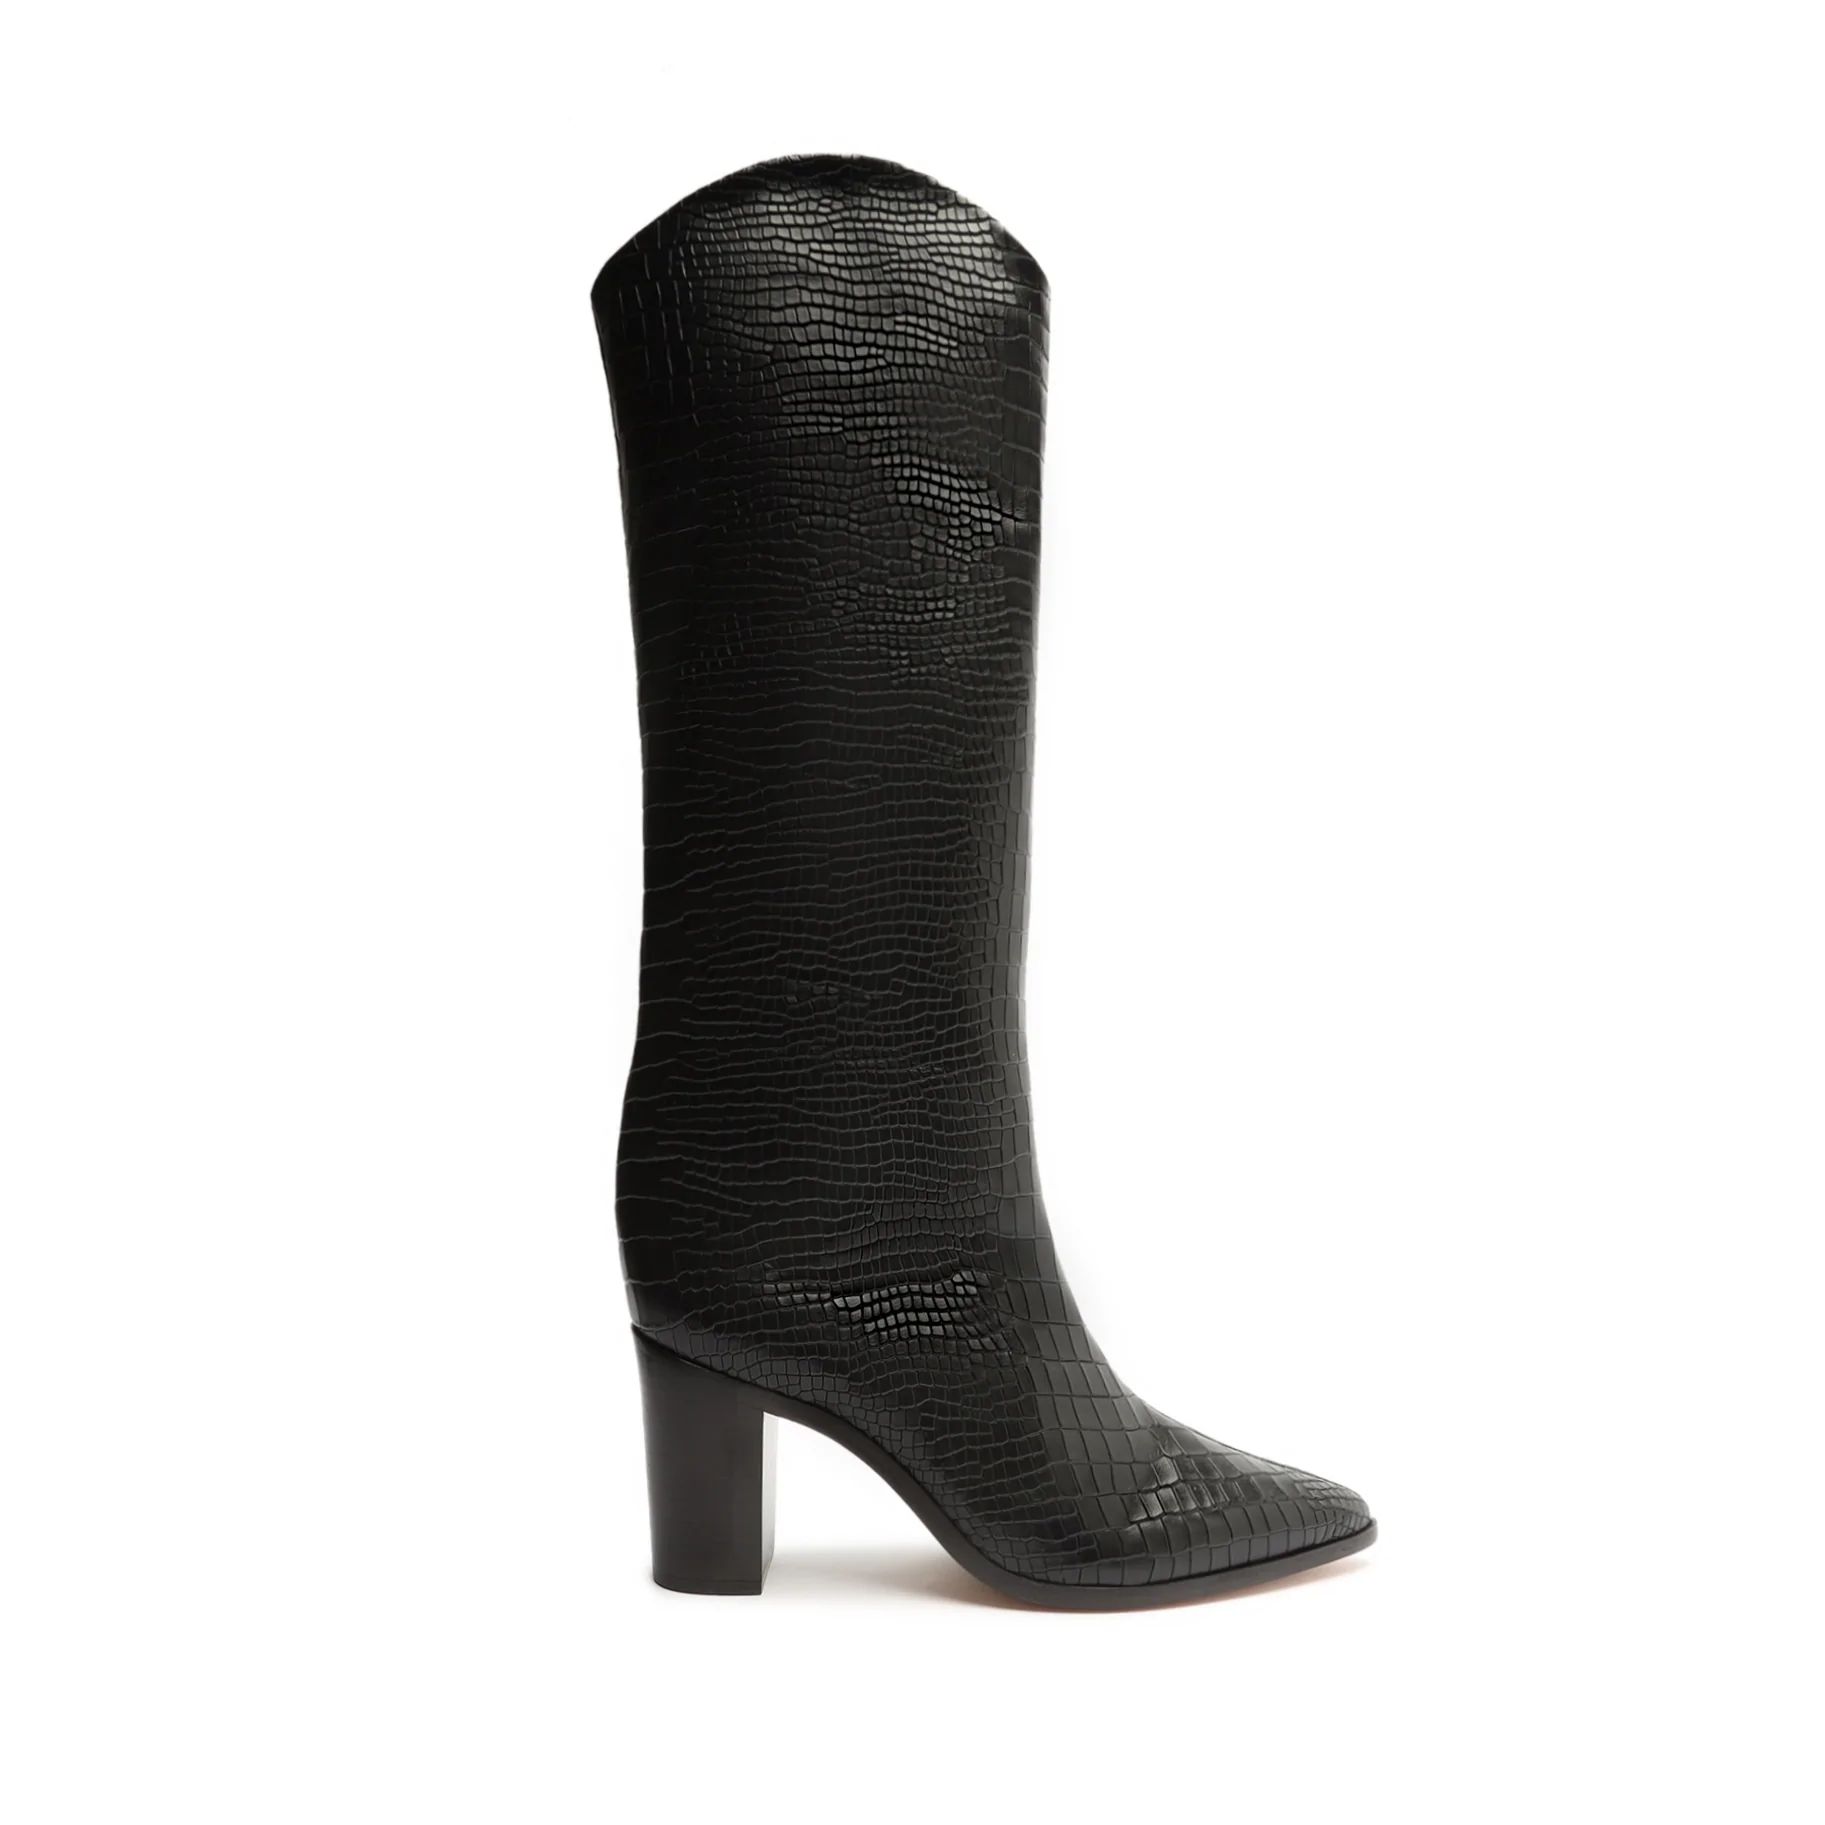 Maryana Block Pointed Toe Block Heel Boot in Croco | Schutz Shoes | Schutz Shoes (US)